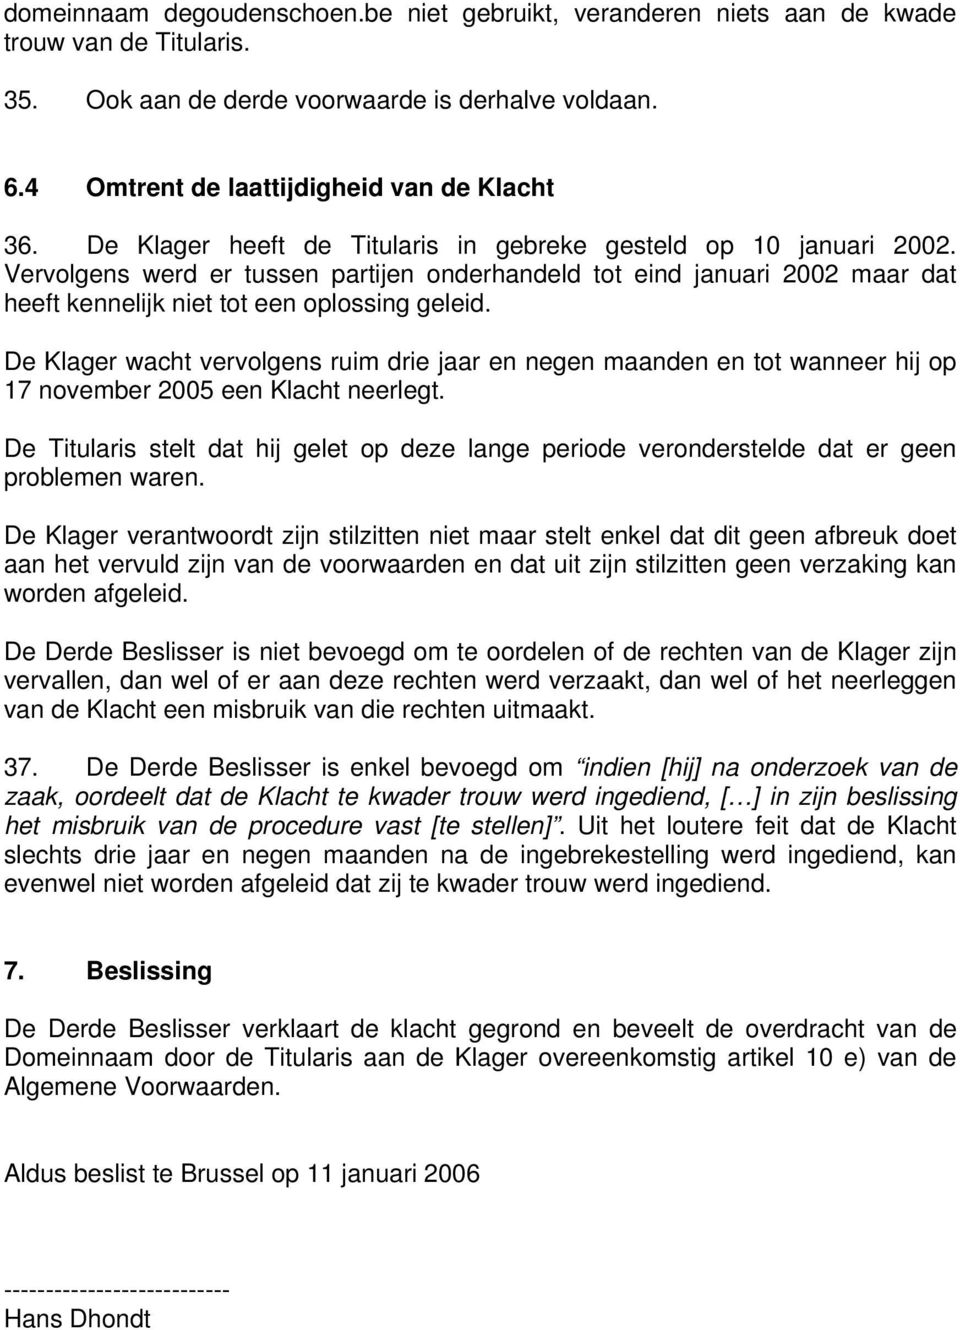 De Klager wacht vervolgens ruim drie jaar en negen maanden en tot wanneer hij op 17 november 2005 een Klacht neerlegt.